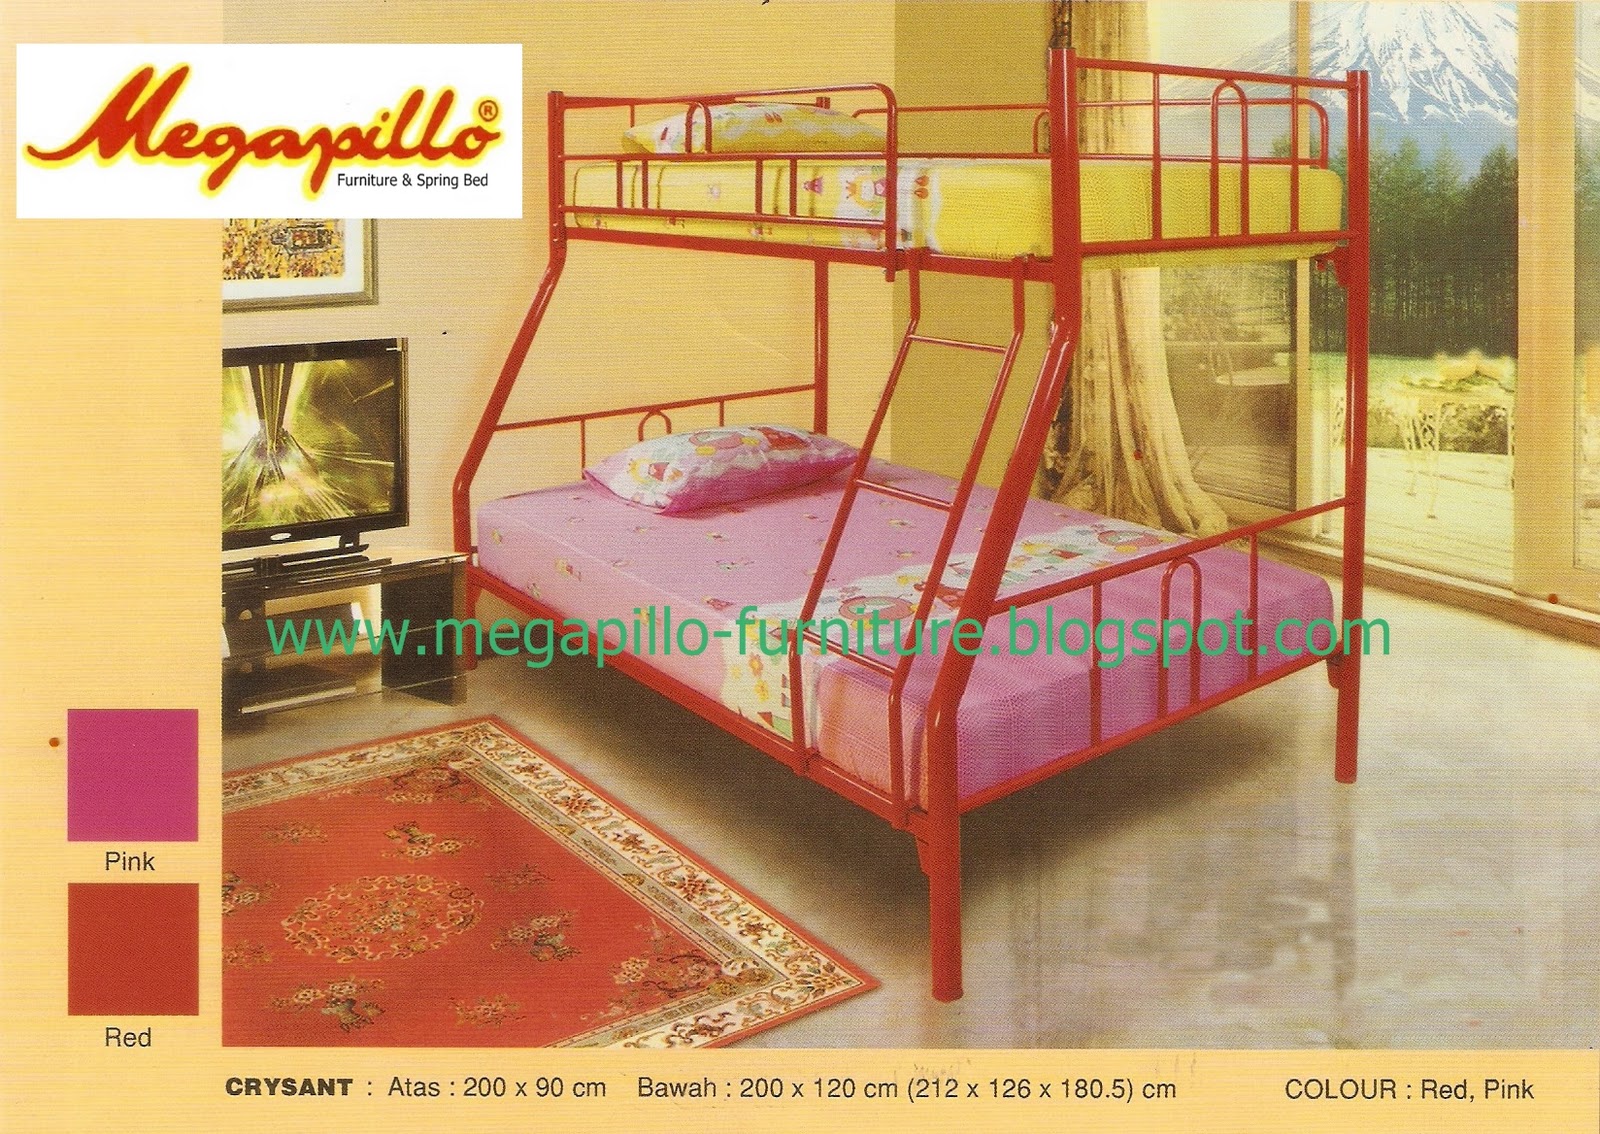 Megapillo Furniture & Spring Bed Online Shop: Ranjang 